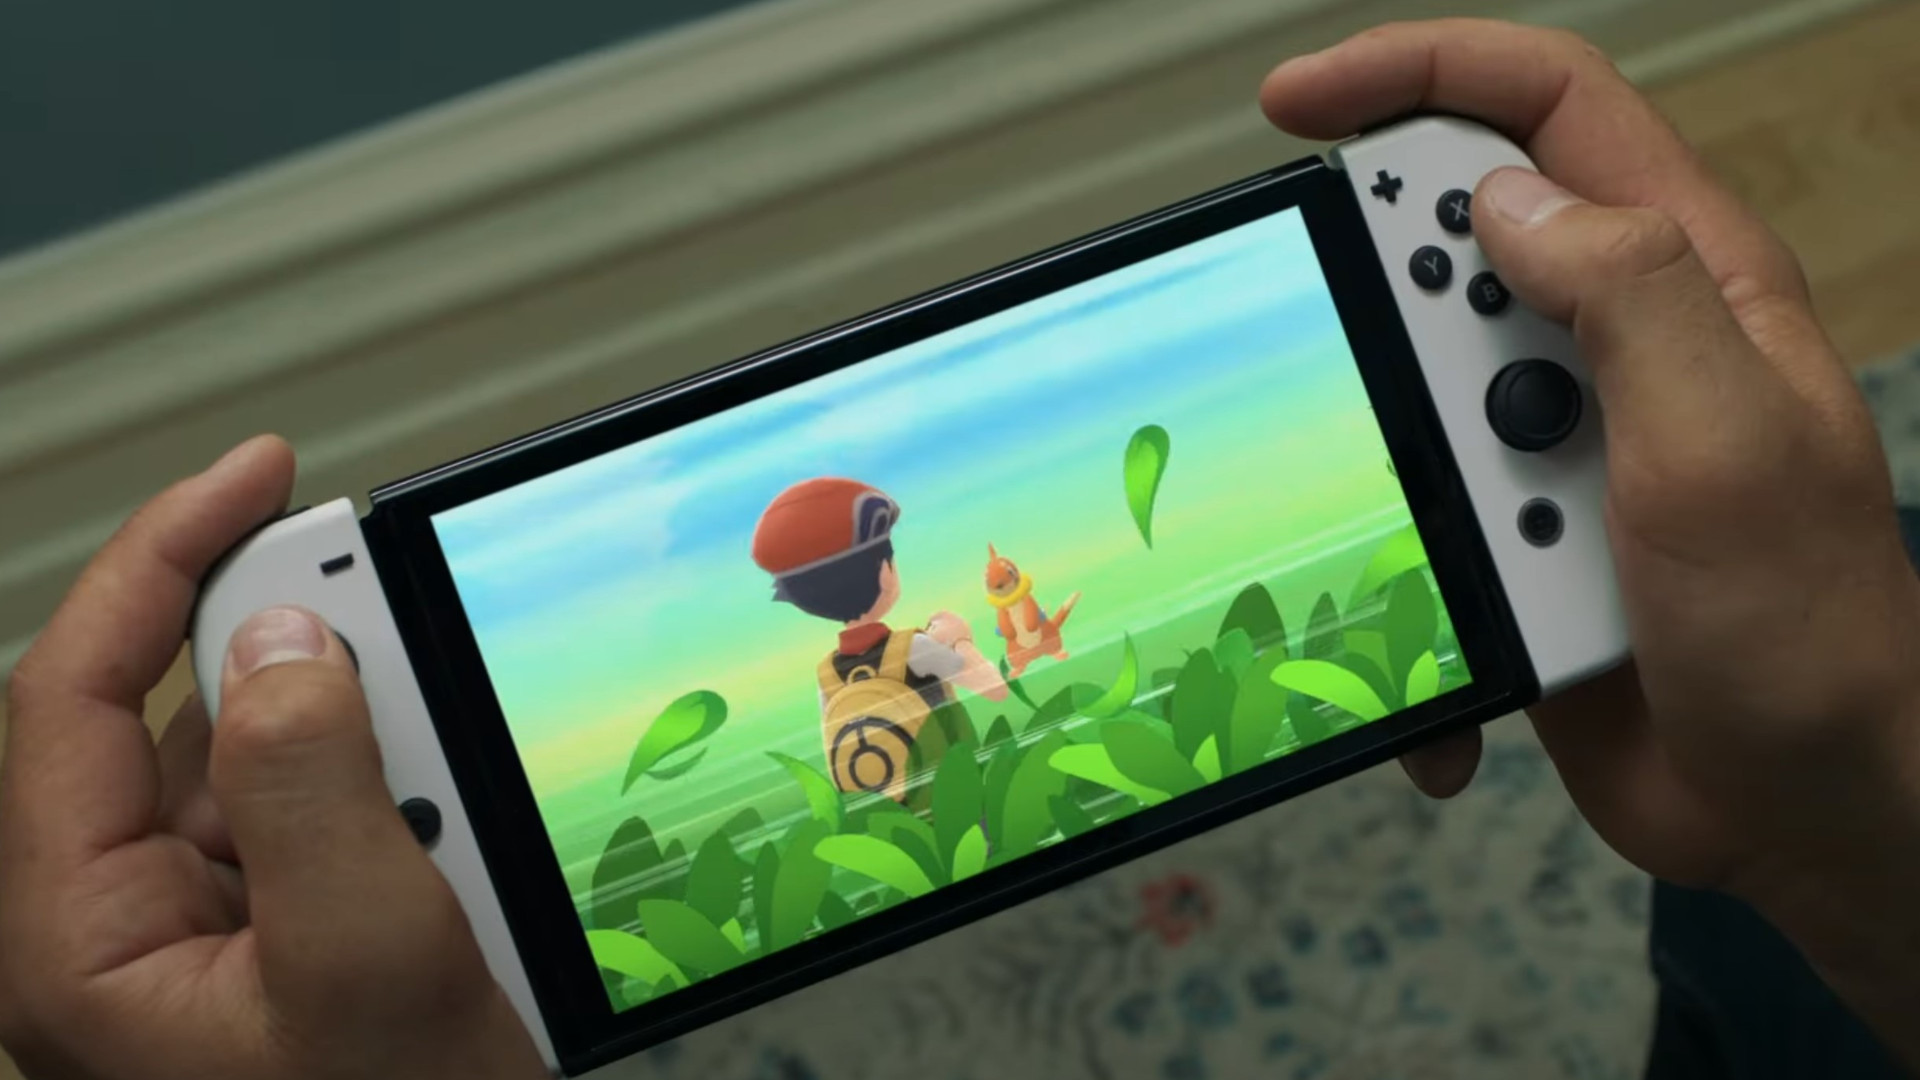 Mali brifinglere göre, Nintendo Switch desteği muhtemelen sonraki lansmanlardan sonra da devam edecek - Dünyadan Güncel Teknoloji Haberleri